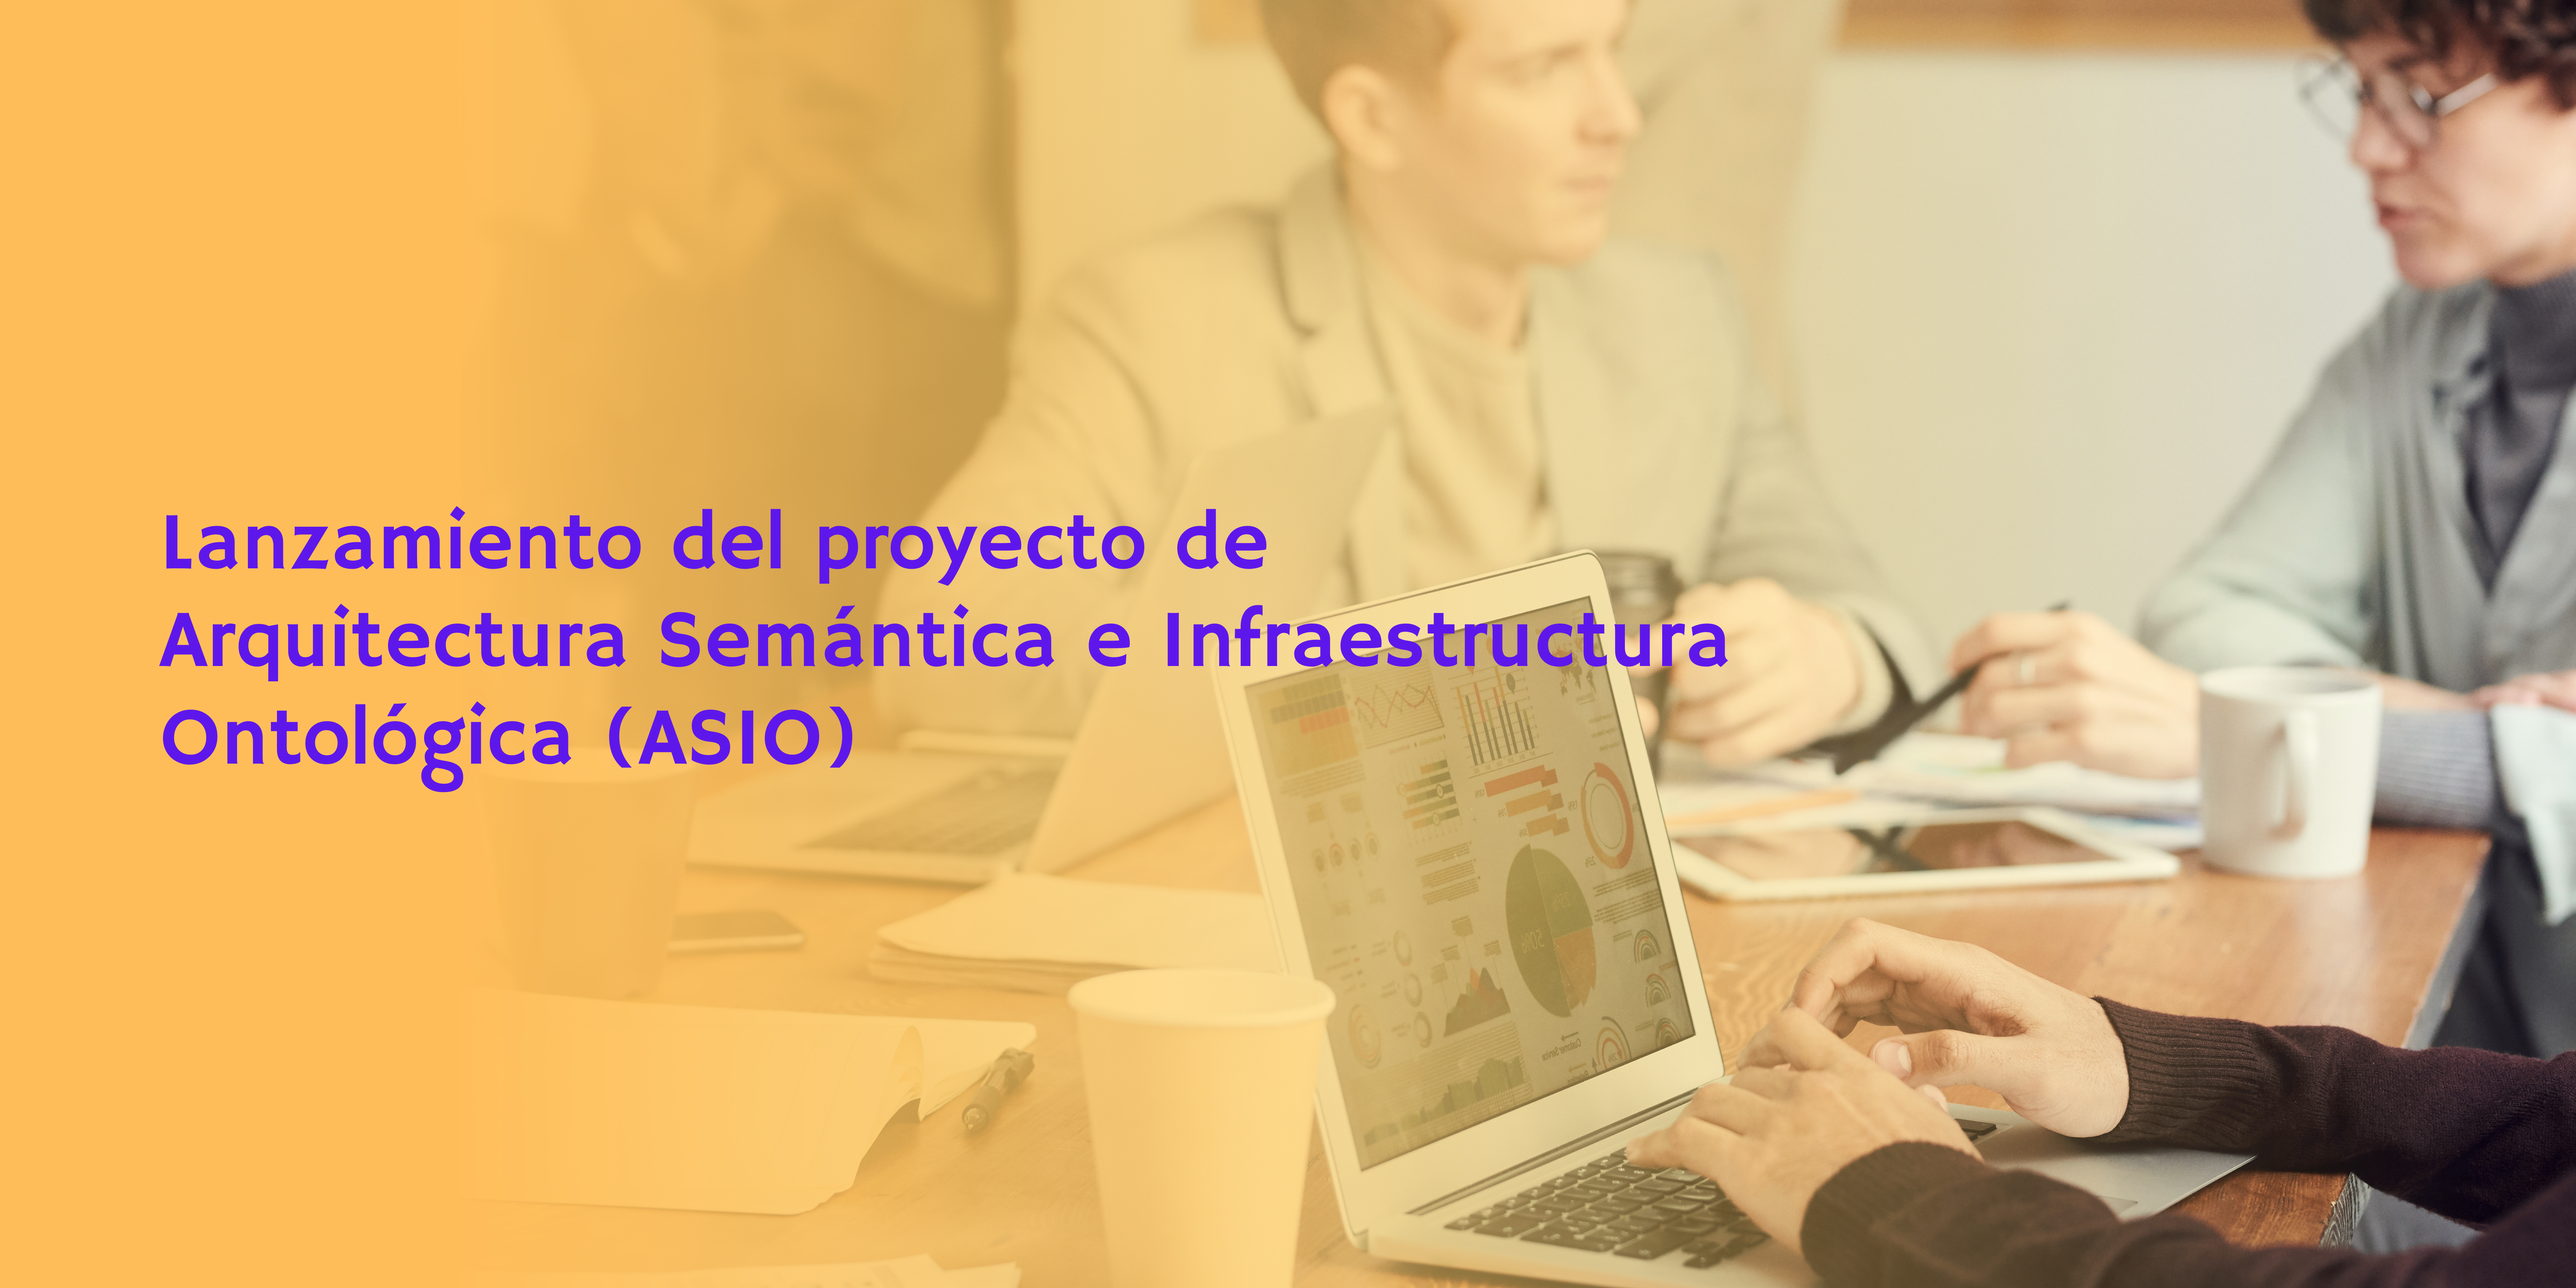 Lanzamiento del proyecto de Arquitectura Semántica e Infraestructura Ontológica (ASIO), enmarcado en dentro del proyecto Hércules.